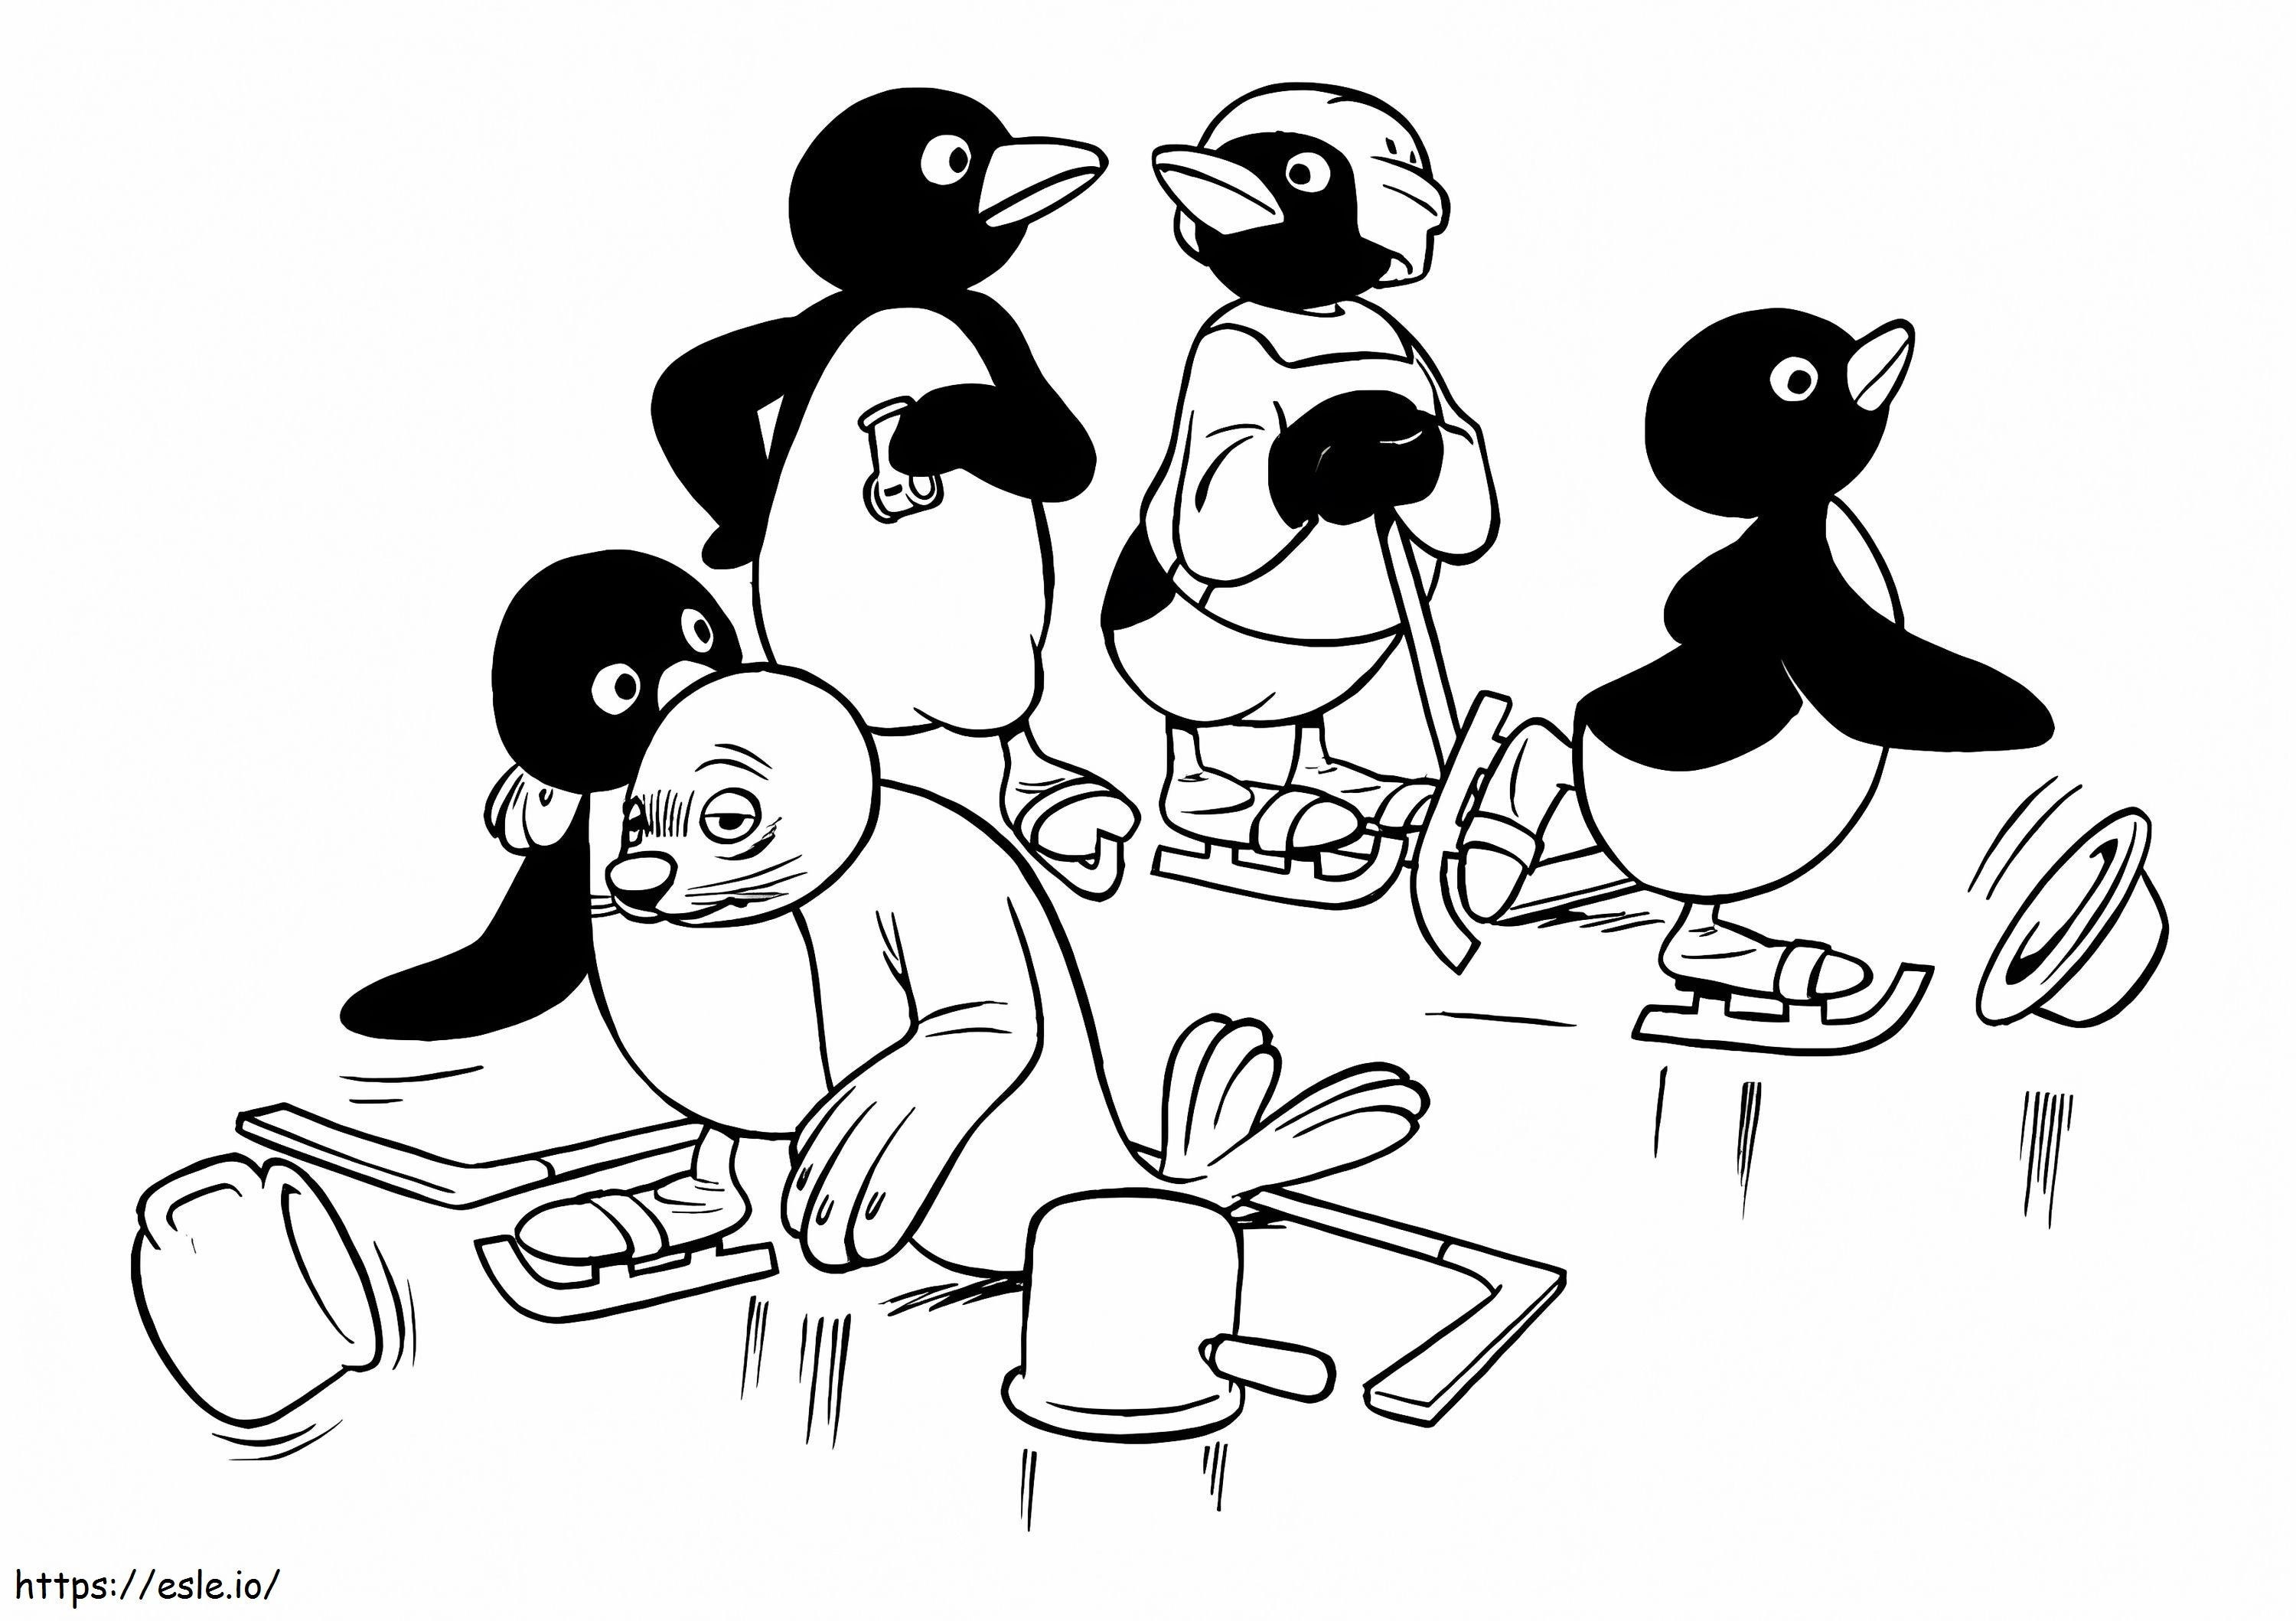 Pingu csapat kifestő